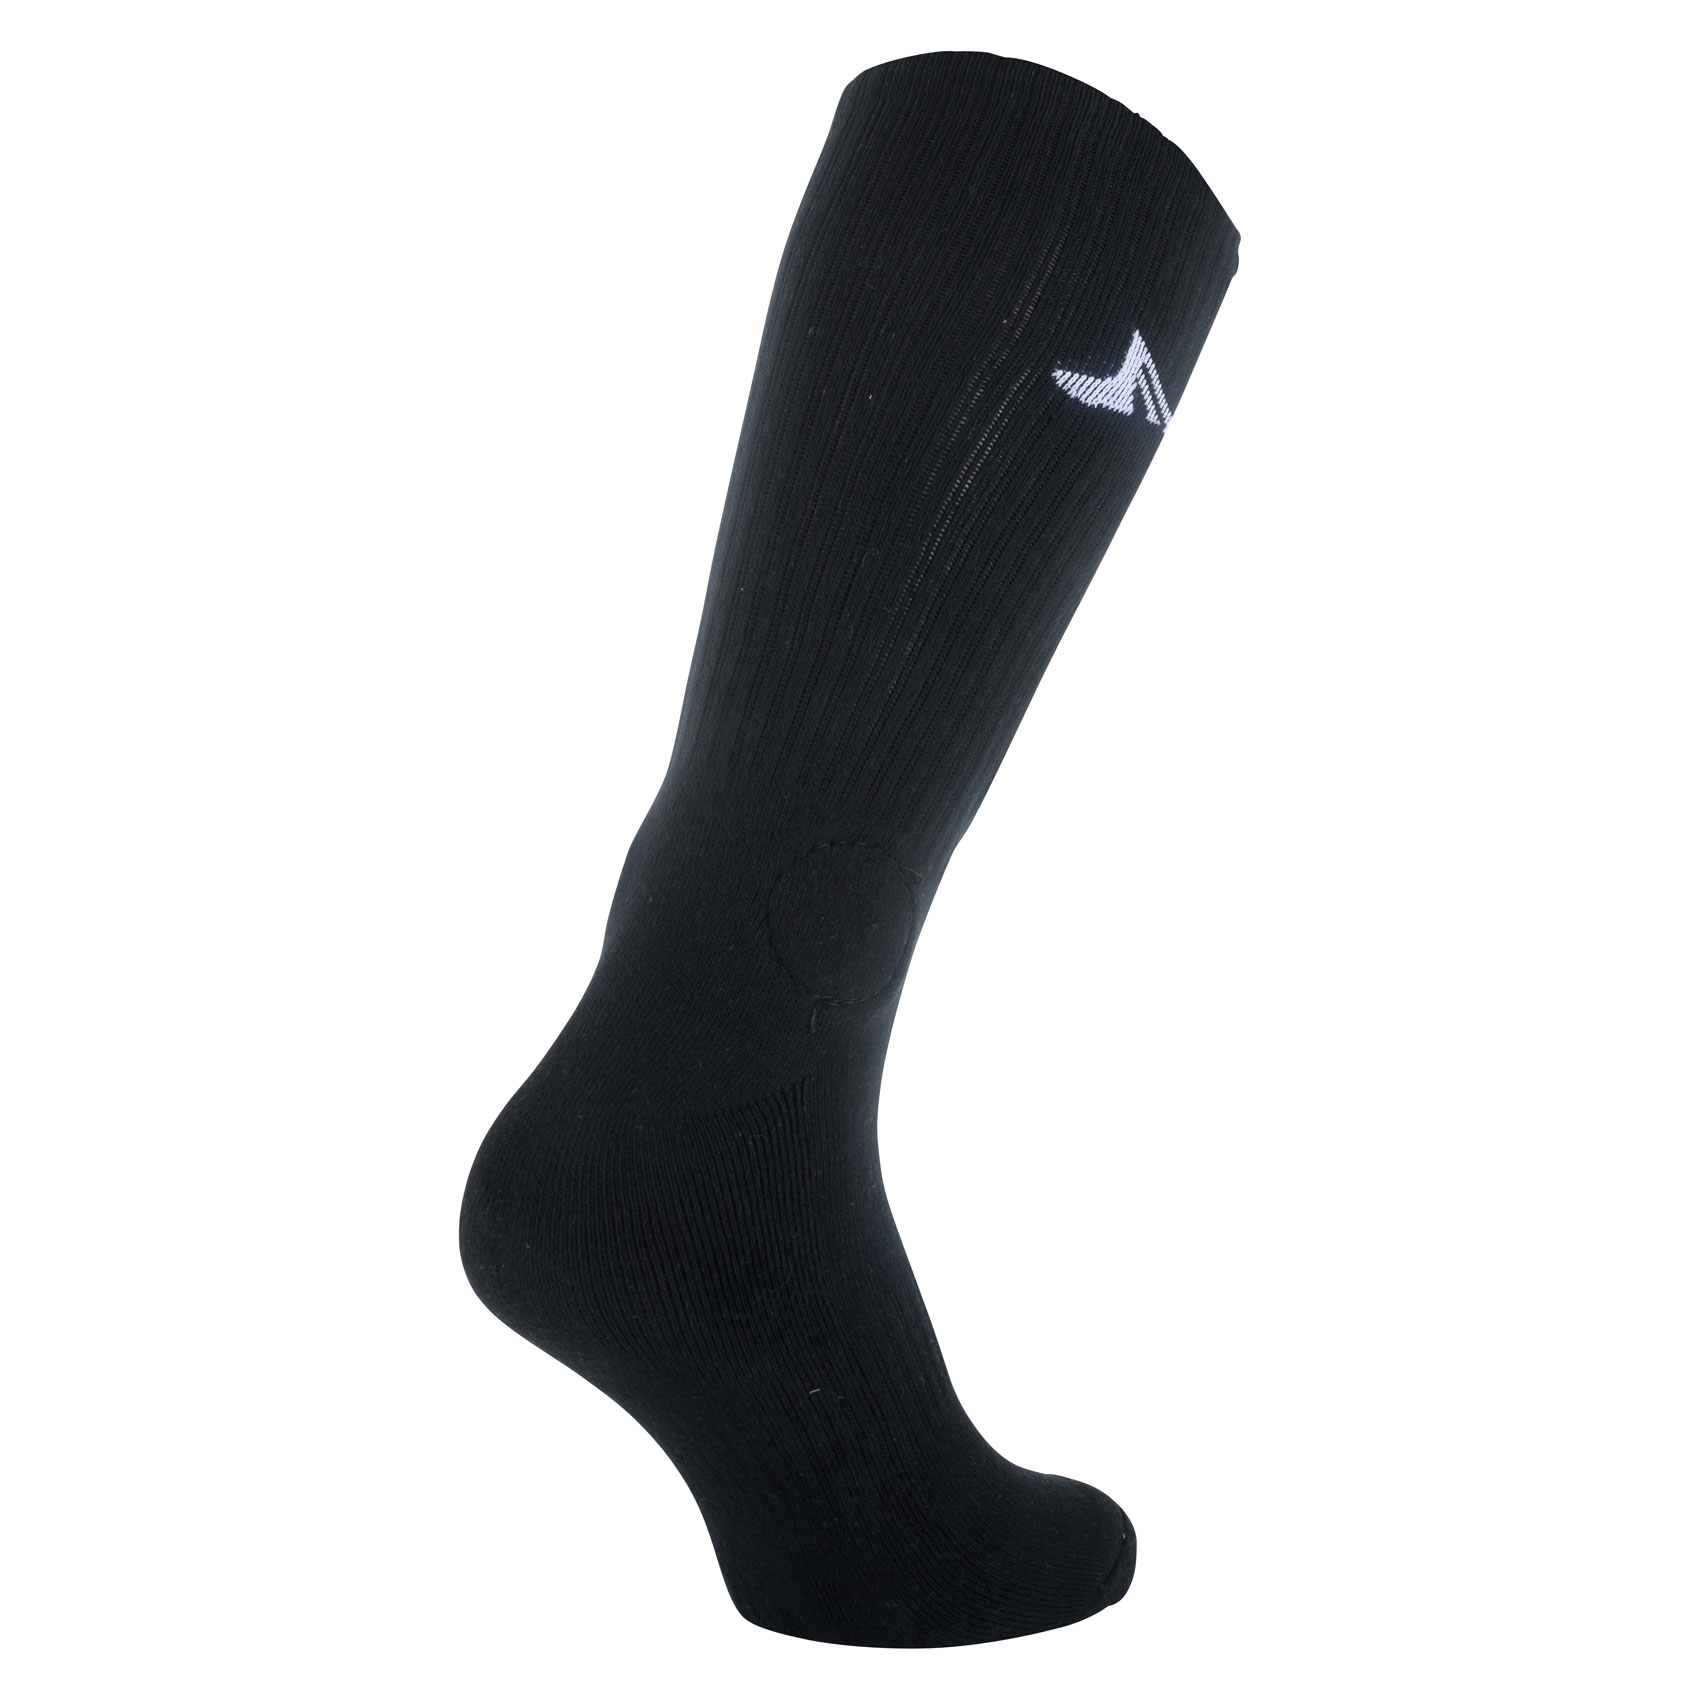 Footprint Socken Knee High Painkiller Shin Socks (black grey)